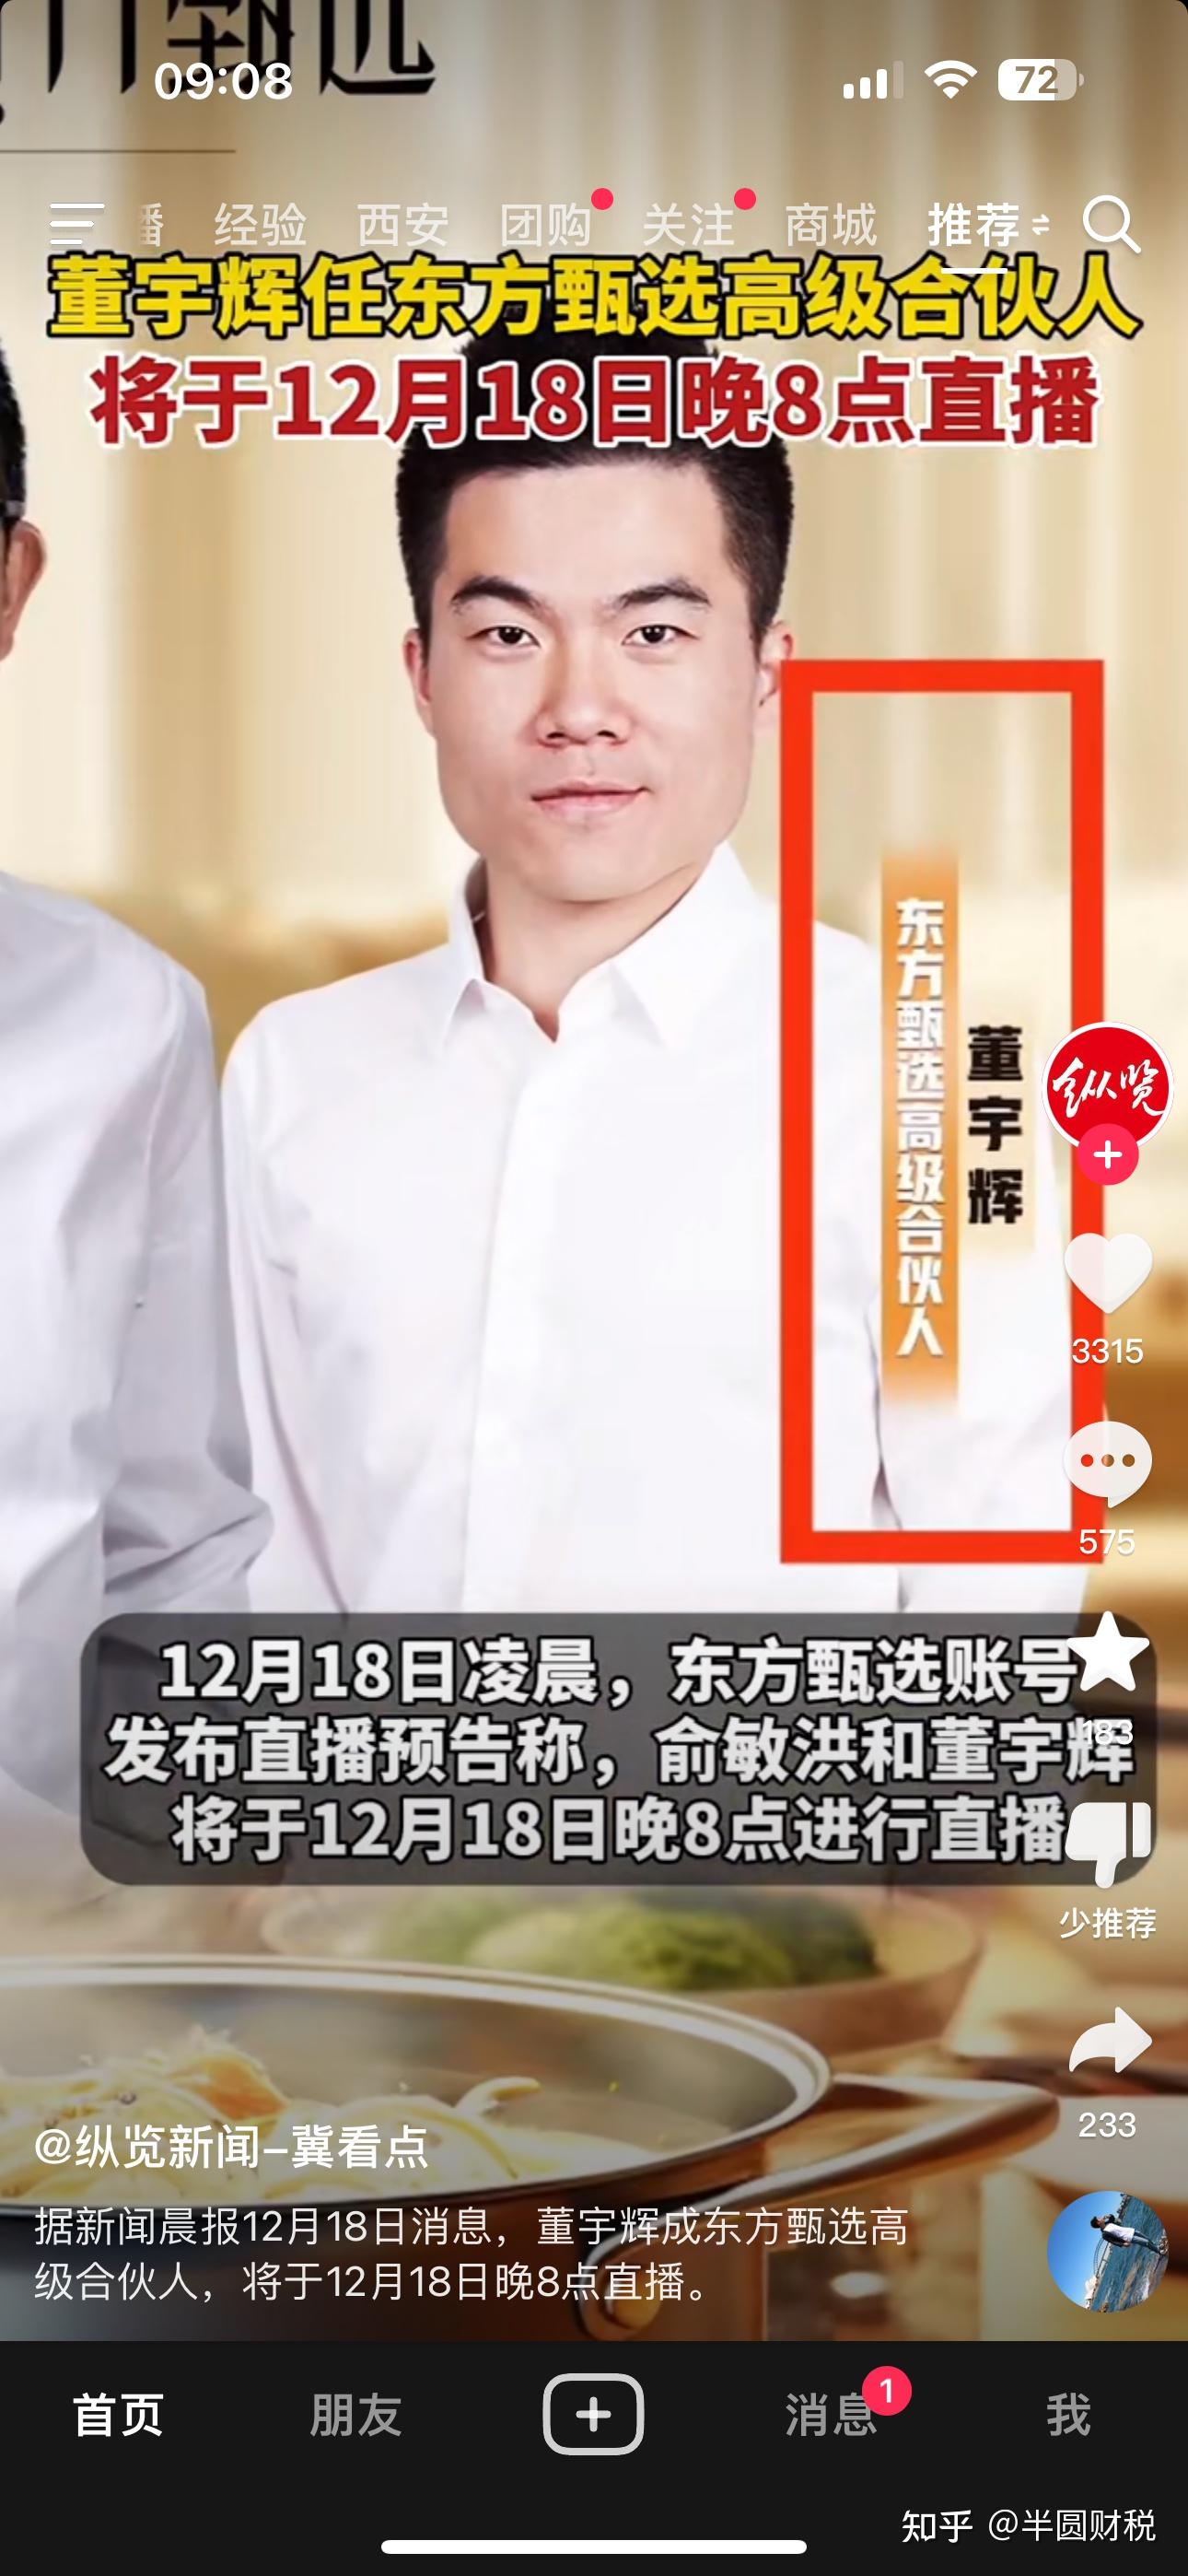 董宇辉回应争议：文案各有负责的部分，反对饭圈文化 - 电商报